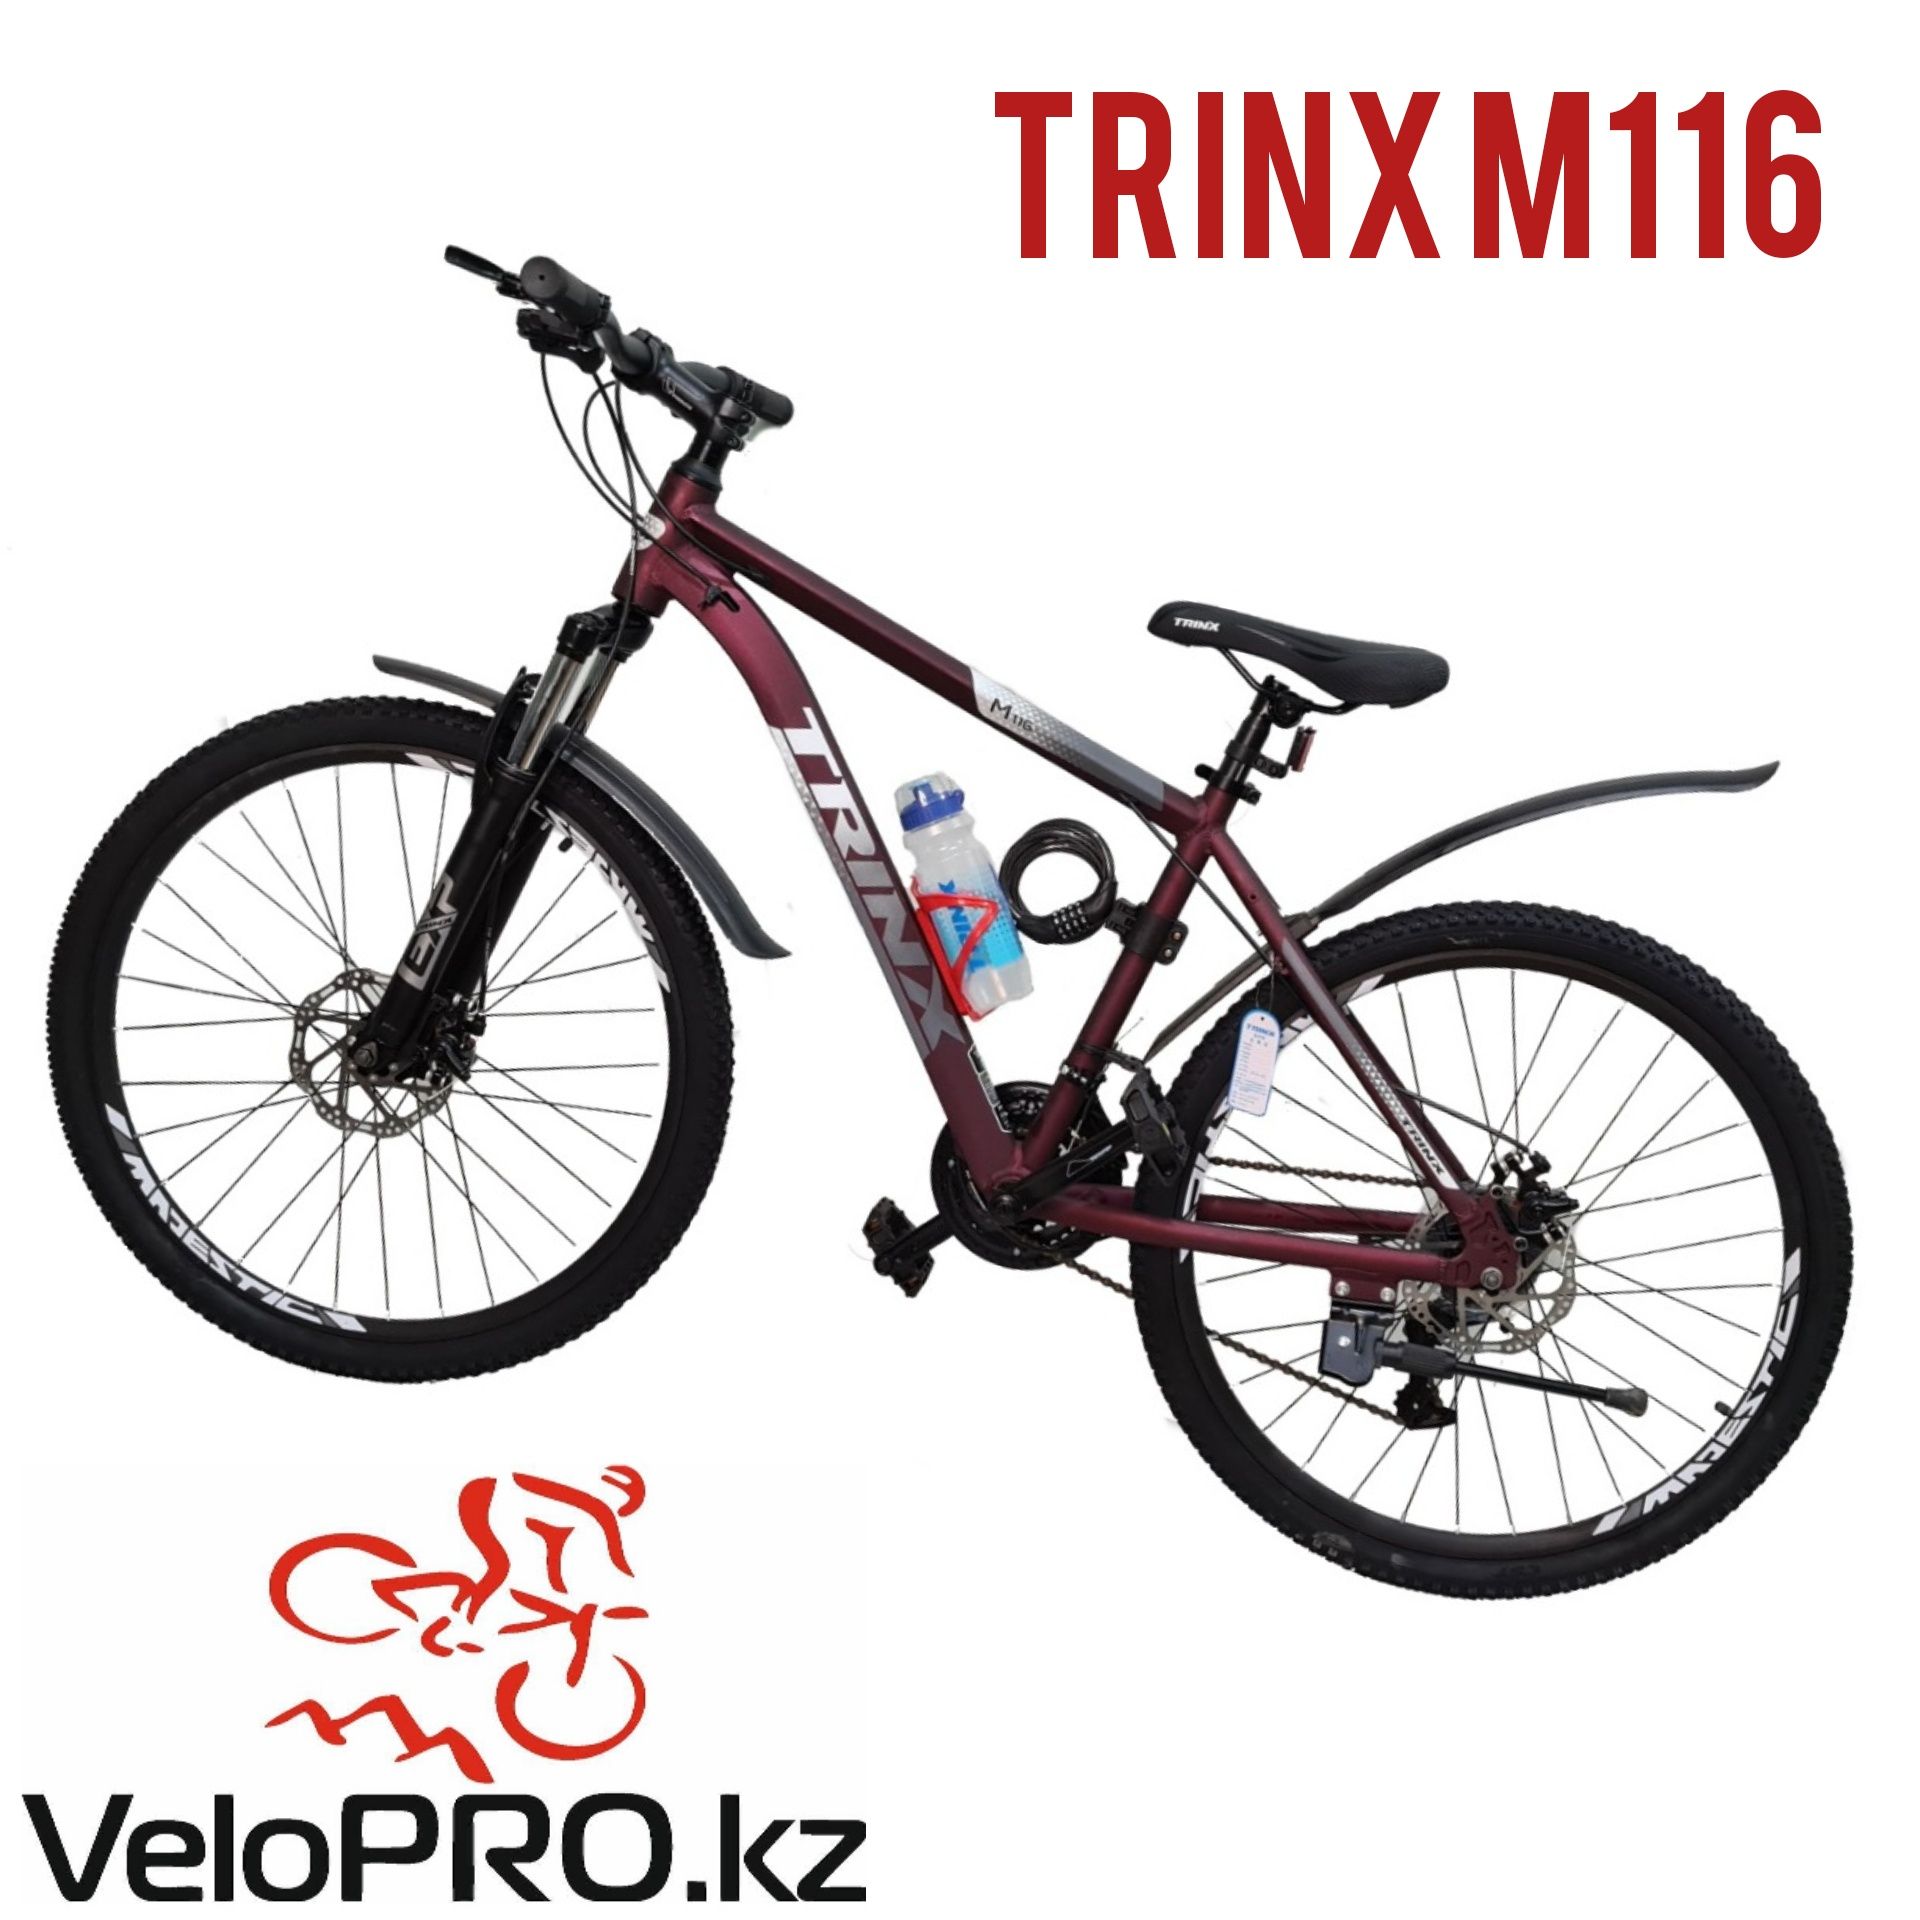 Велосипед Trinx m116. Рама 17,19,21. Колеса 26.